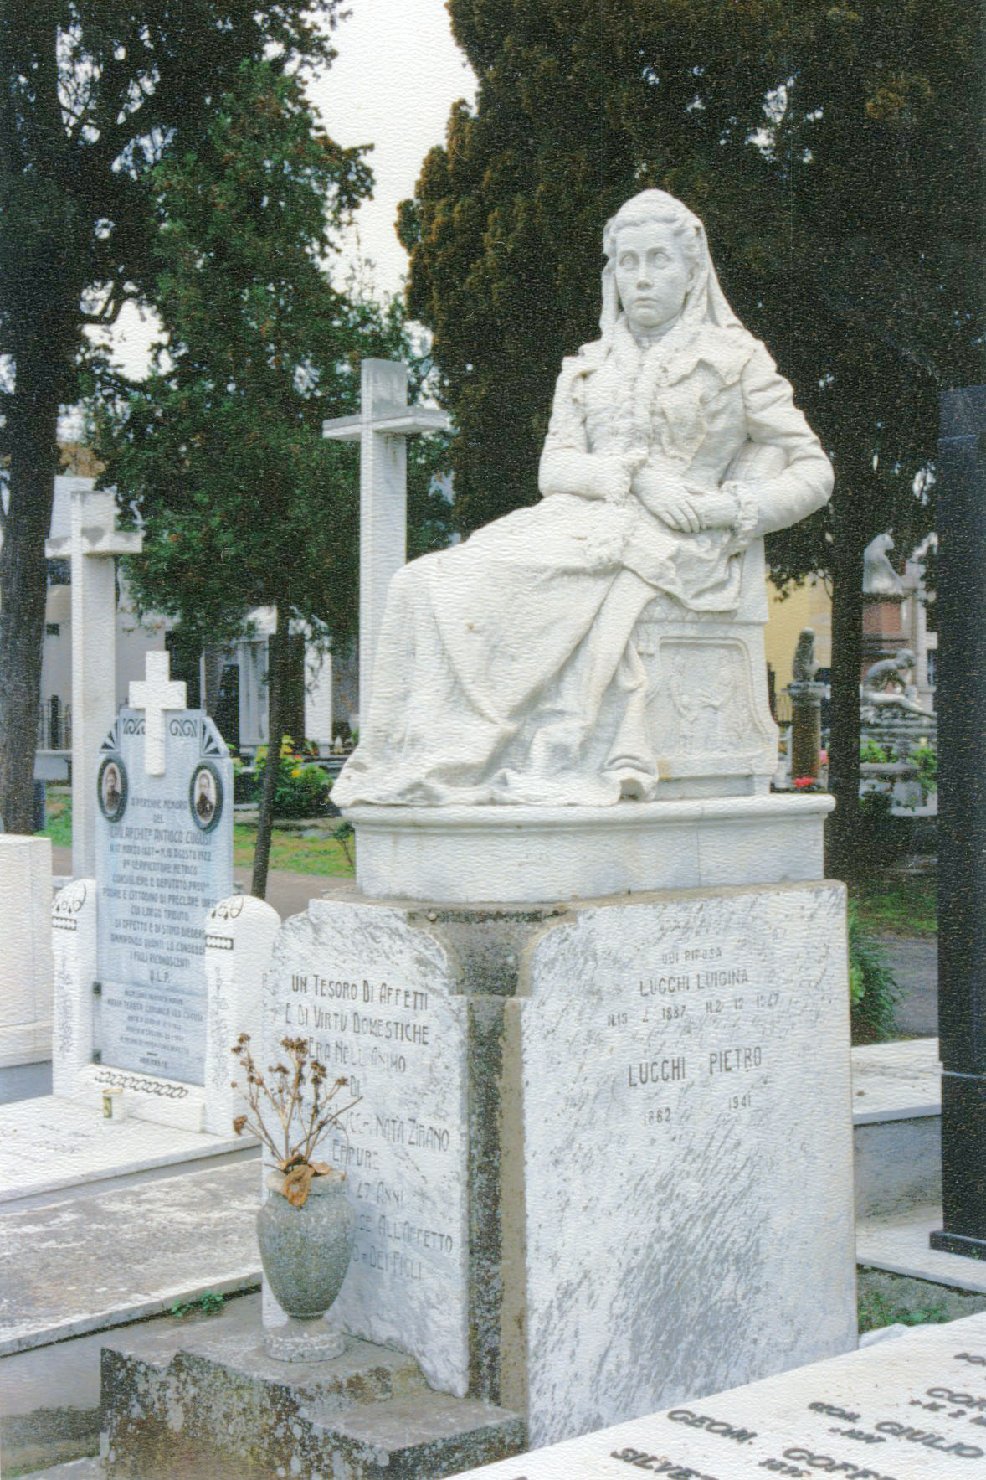 Ritratto di antonietta lucchi zirano, figura femminile seduta (monumento funebre)